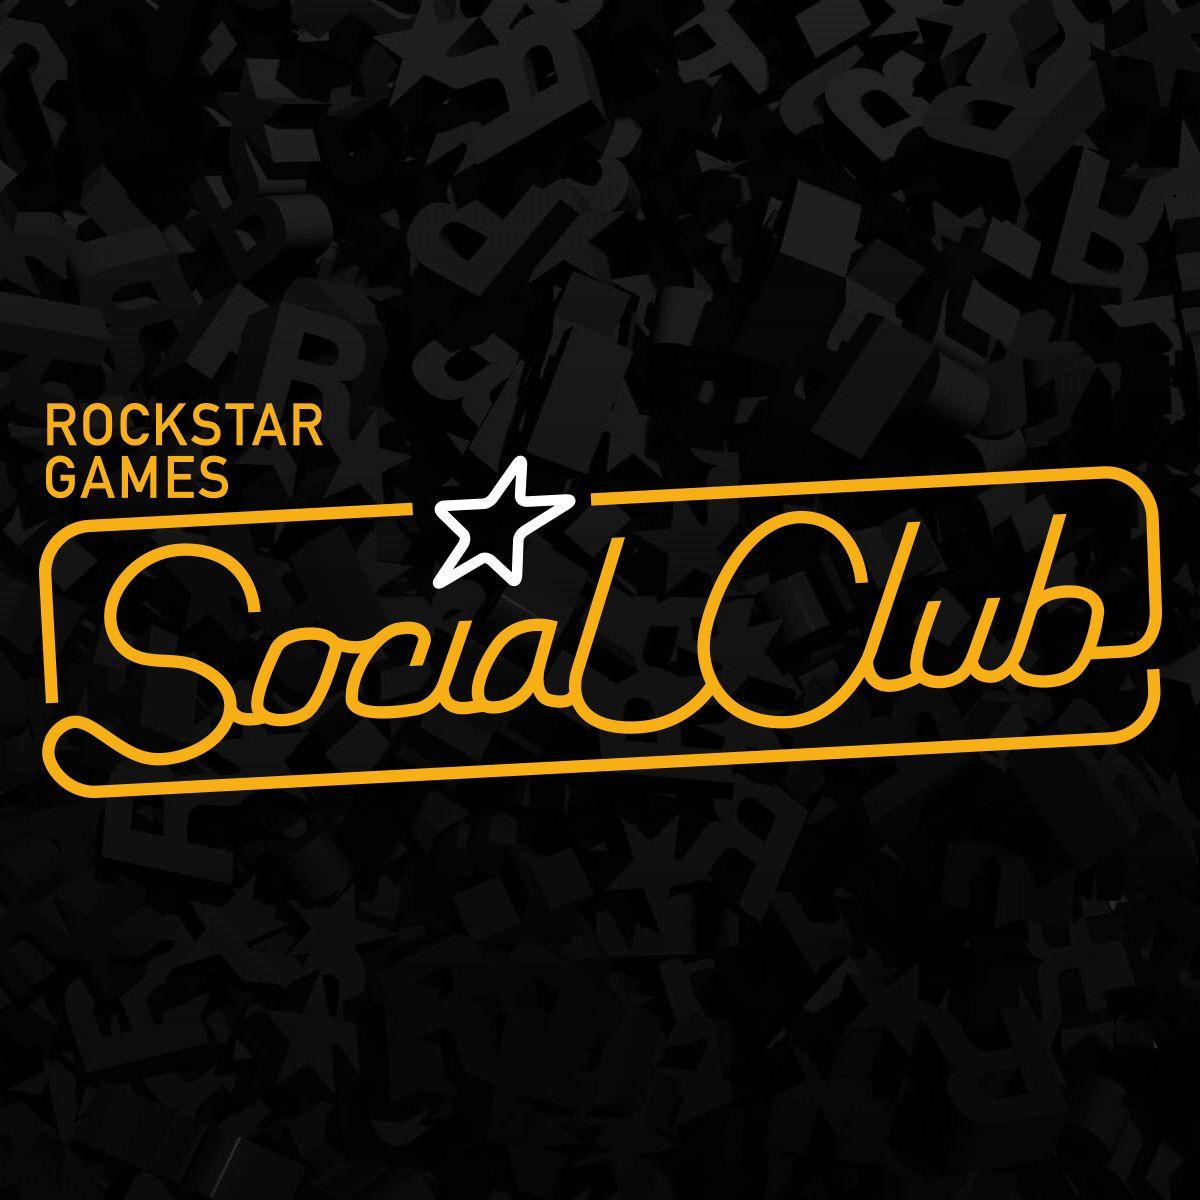 Rockstar social club and steam фото 85